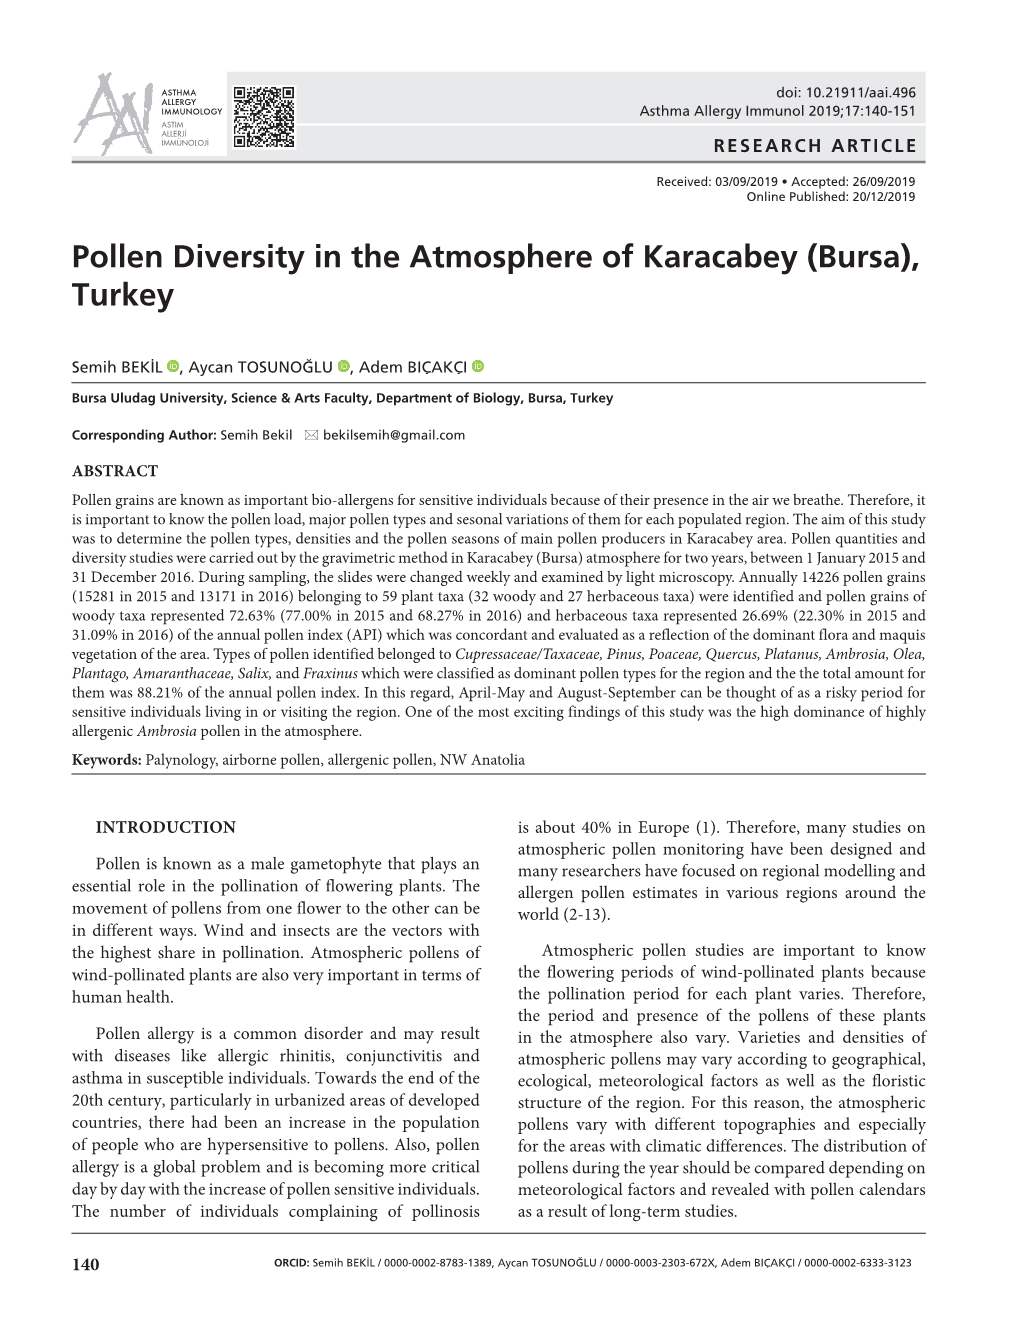 Pollen Diversity in the Atmosphere of Karacabey (Bursa), Turkey